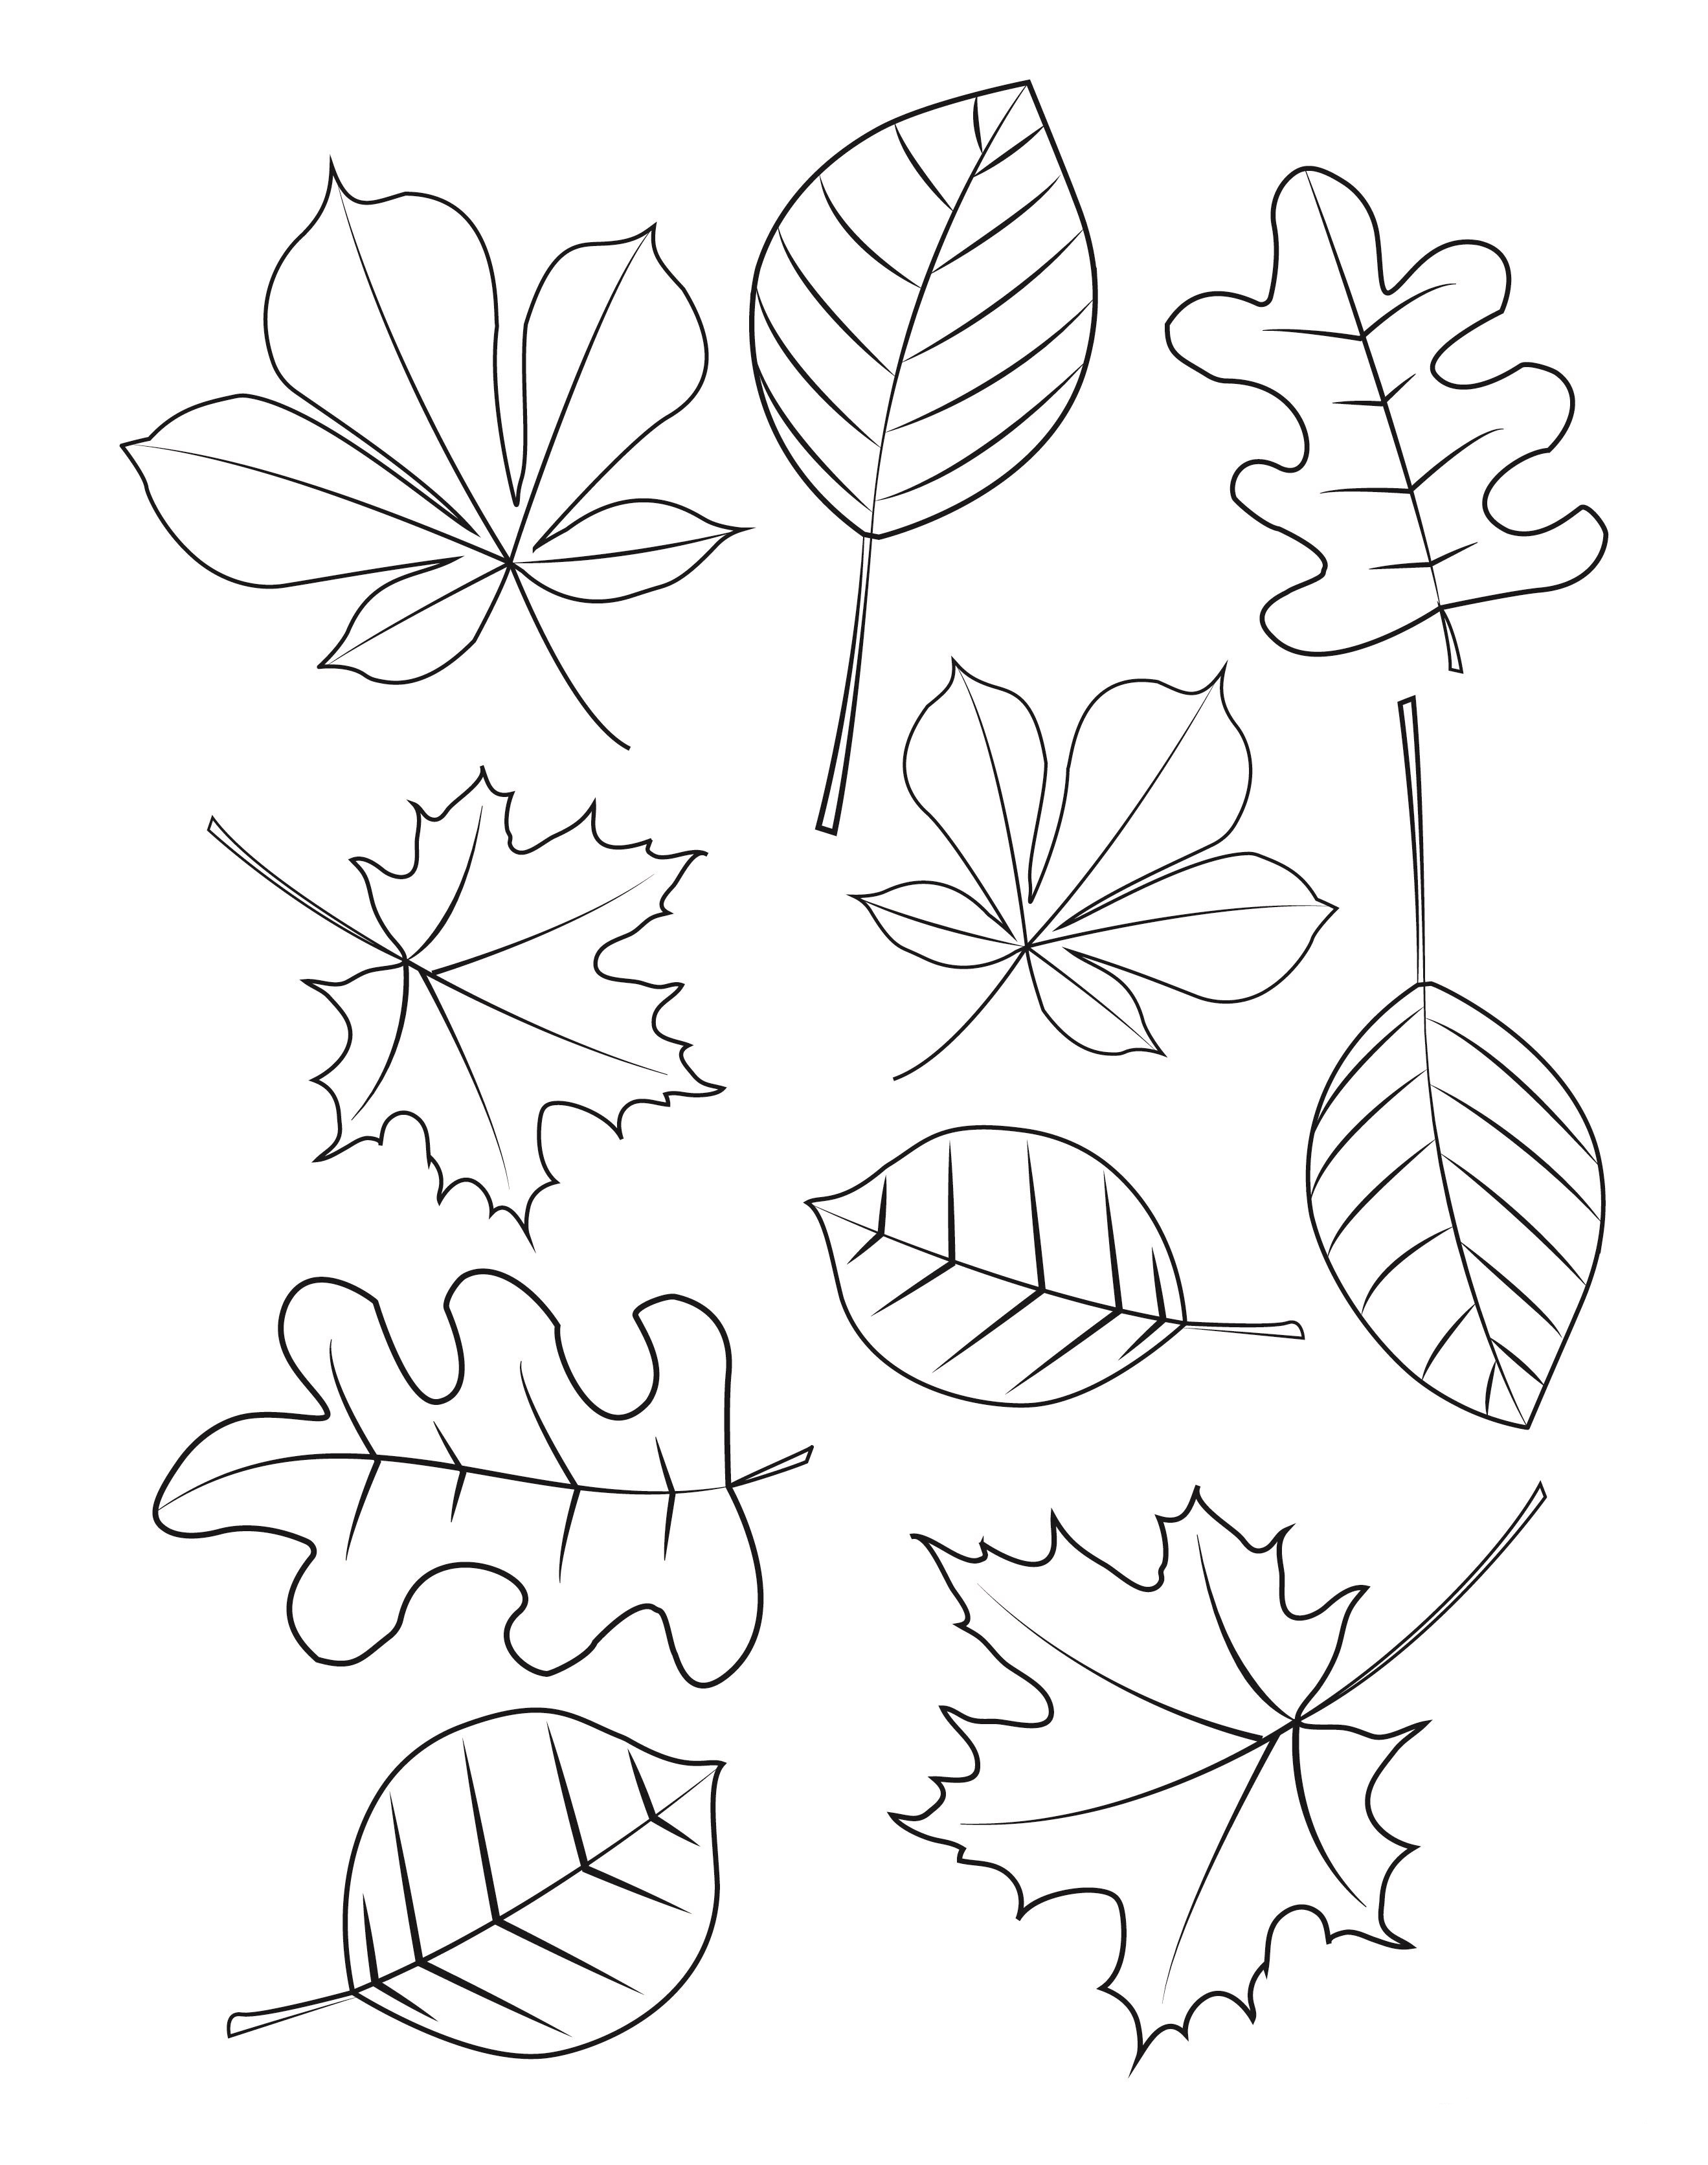 Раскрась листочки. Листочки раскраска. Листья деревьев раскраска. Осенние листочки раскраска. Осенние листья шаблоны для вырезания.